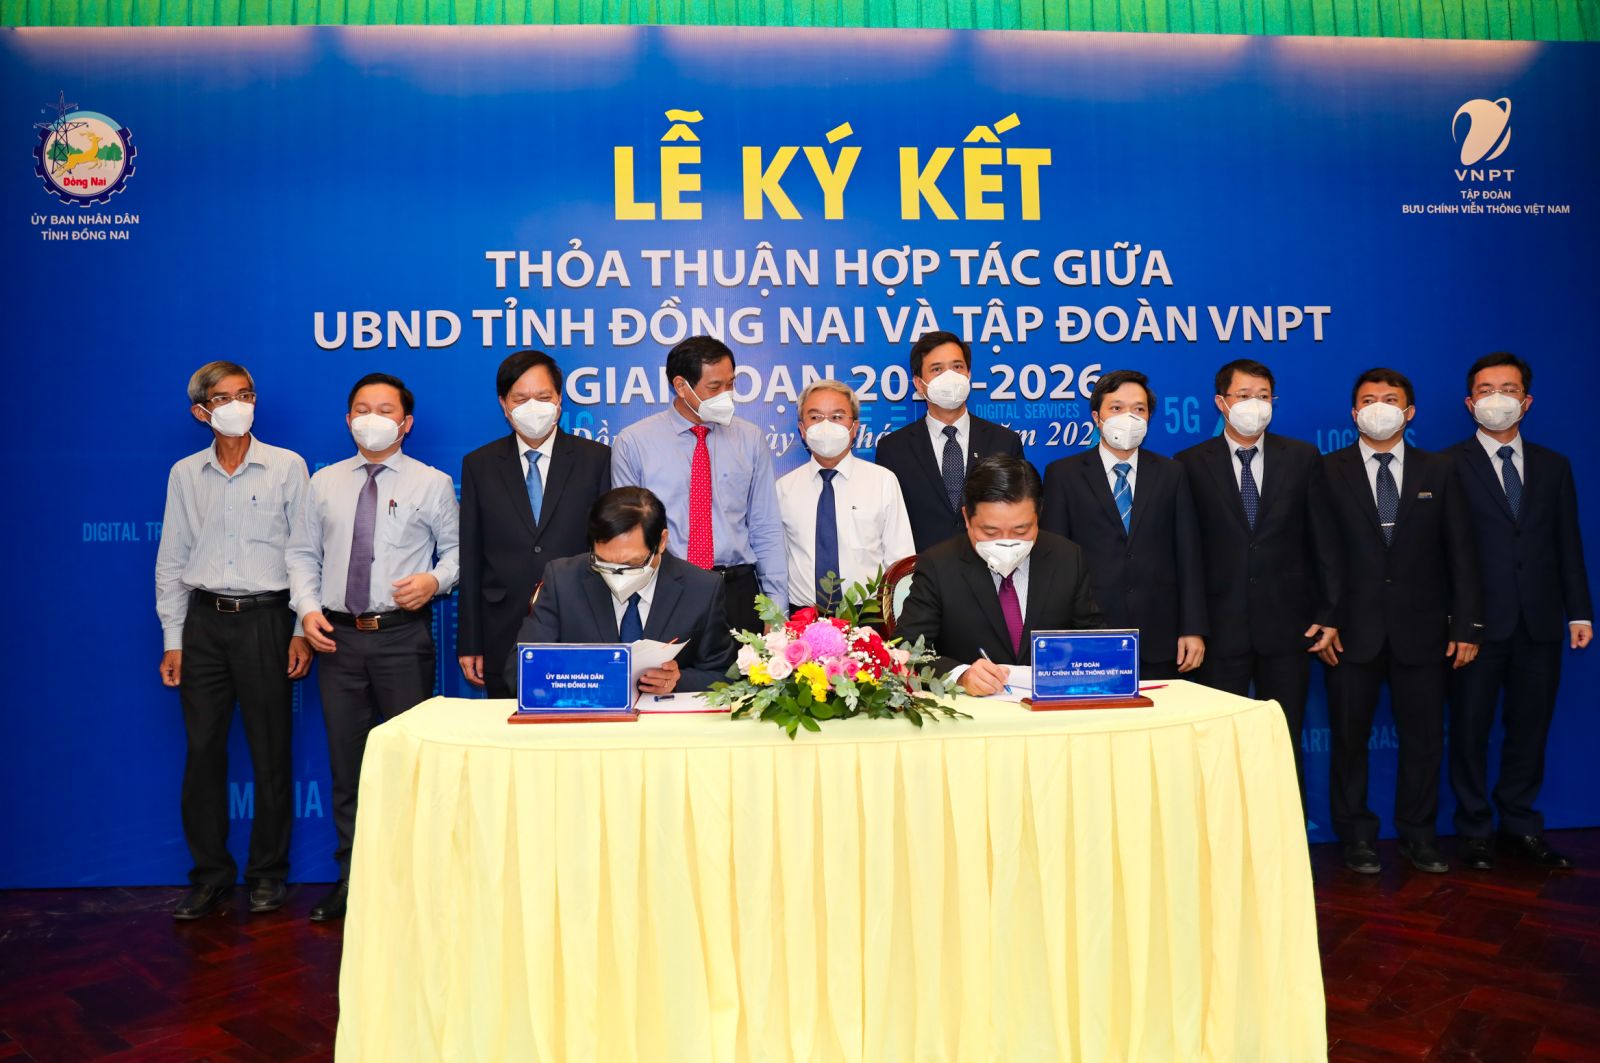 UBND tỉnh Đồng Nai và Tập đoàn VNPT ký kết hợp tác giai đoạn 2021-2026